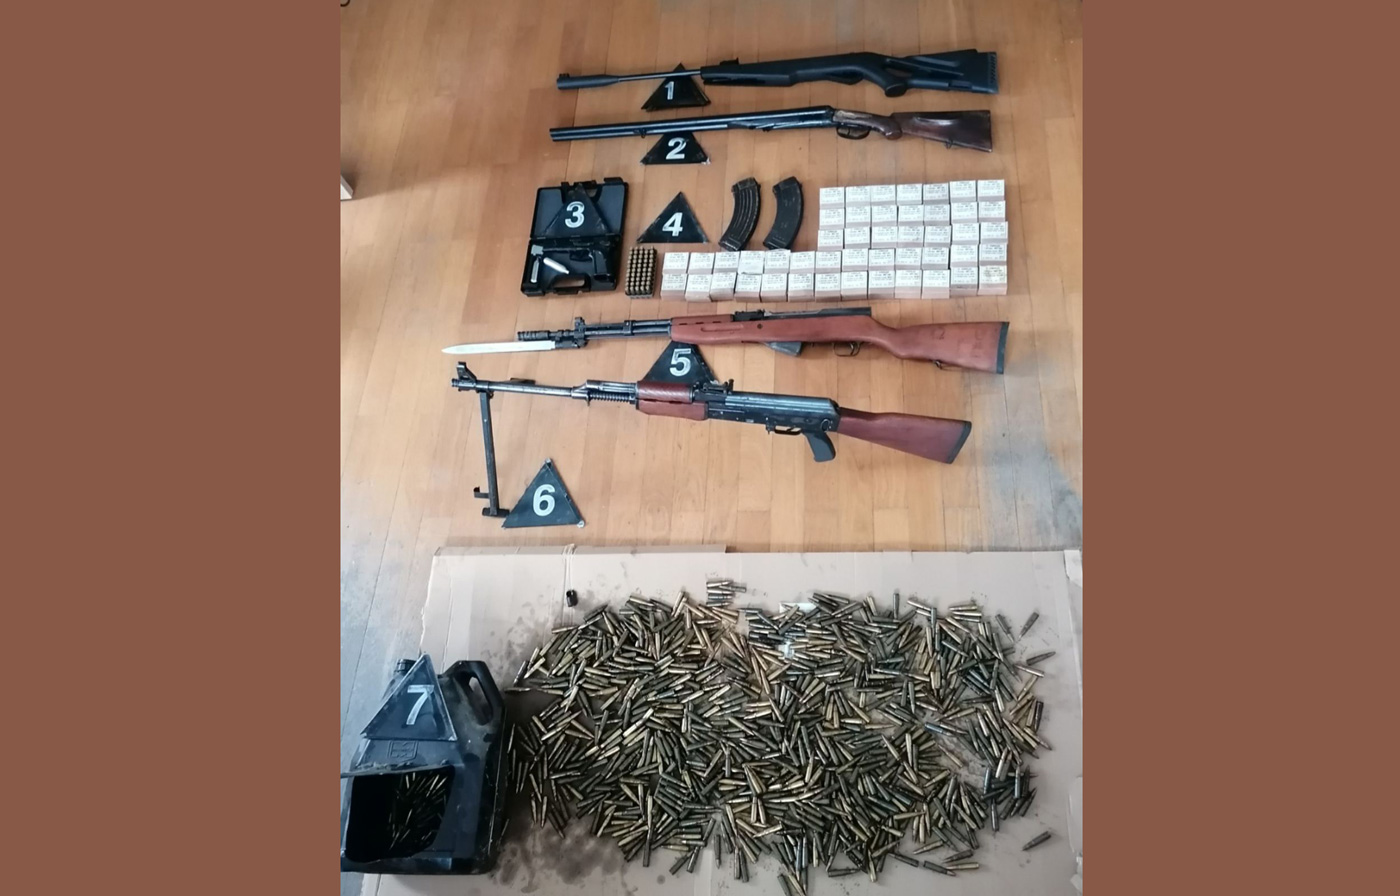 Zaplenjen puškomitralјez, razno oružje i municija u nelegalnom posedu